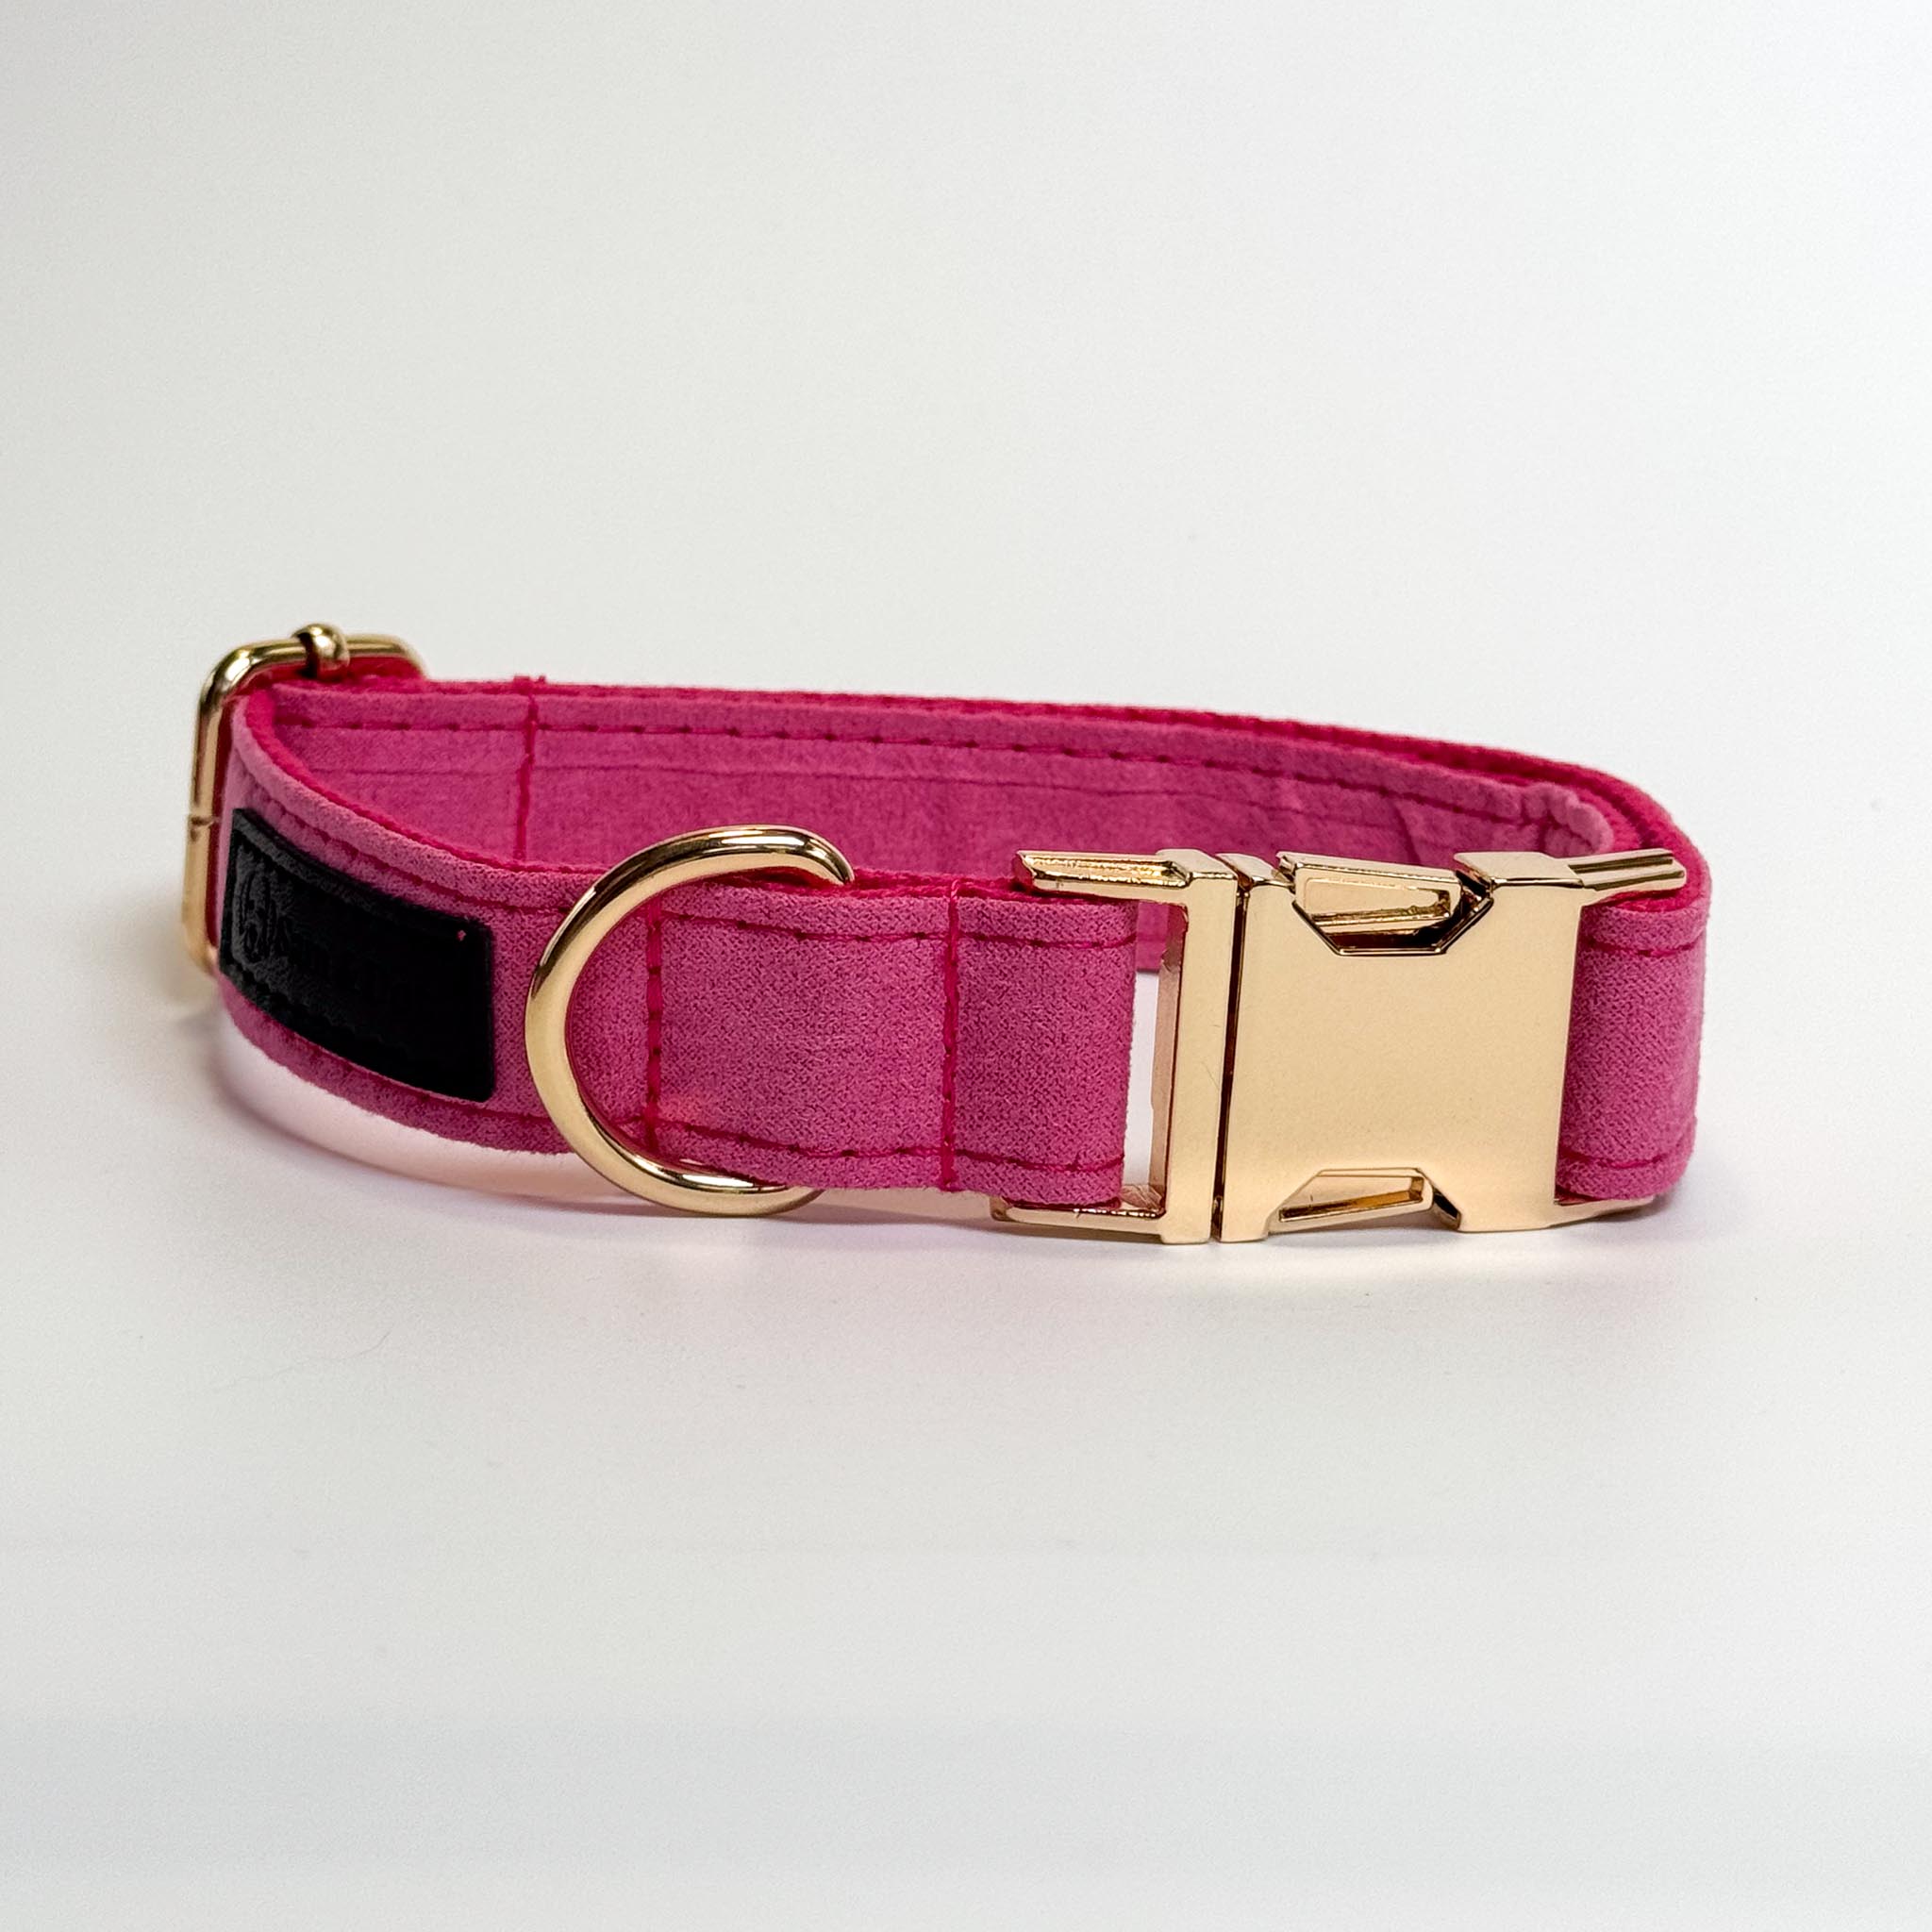 Hot Pink Engraved Dog Collar